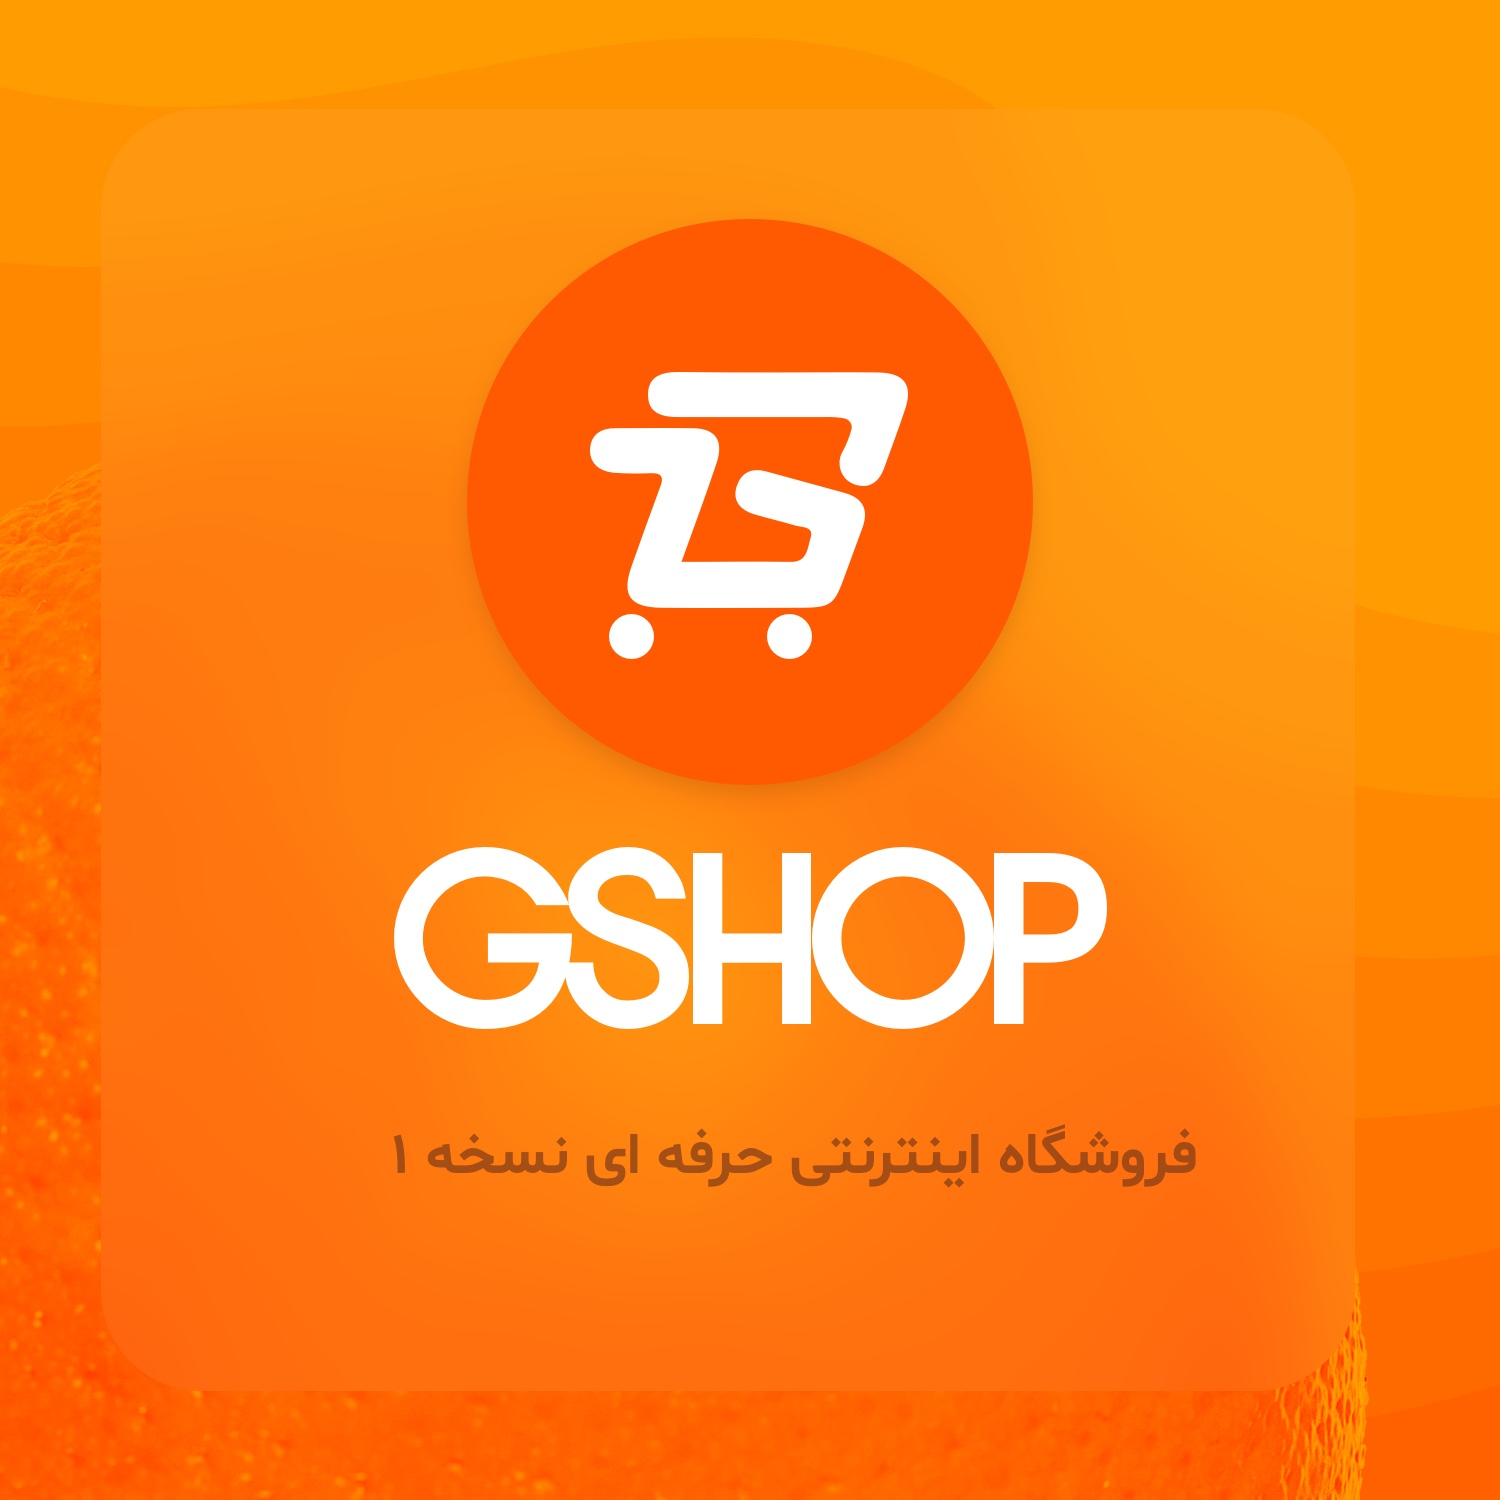 سایت های فروشگاهی1 GShop   